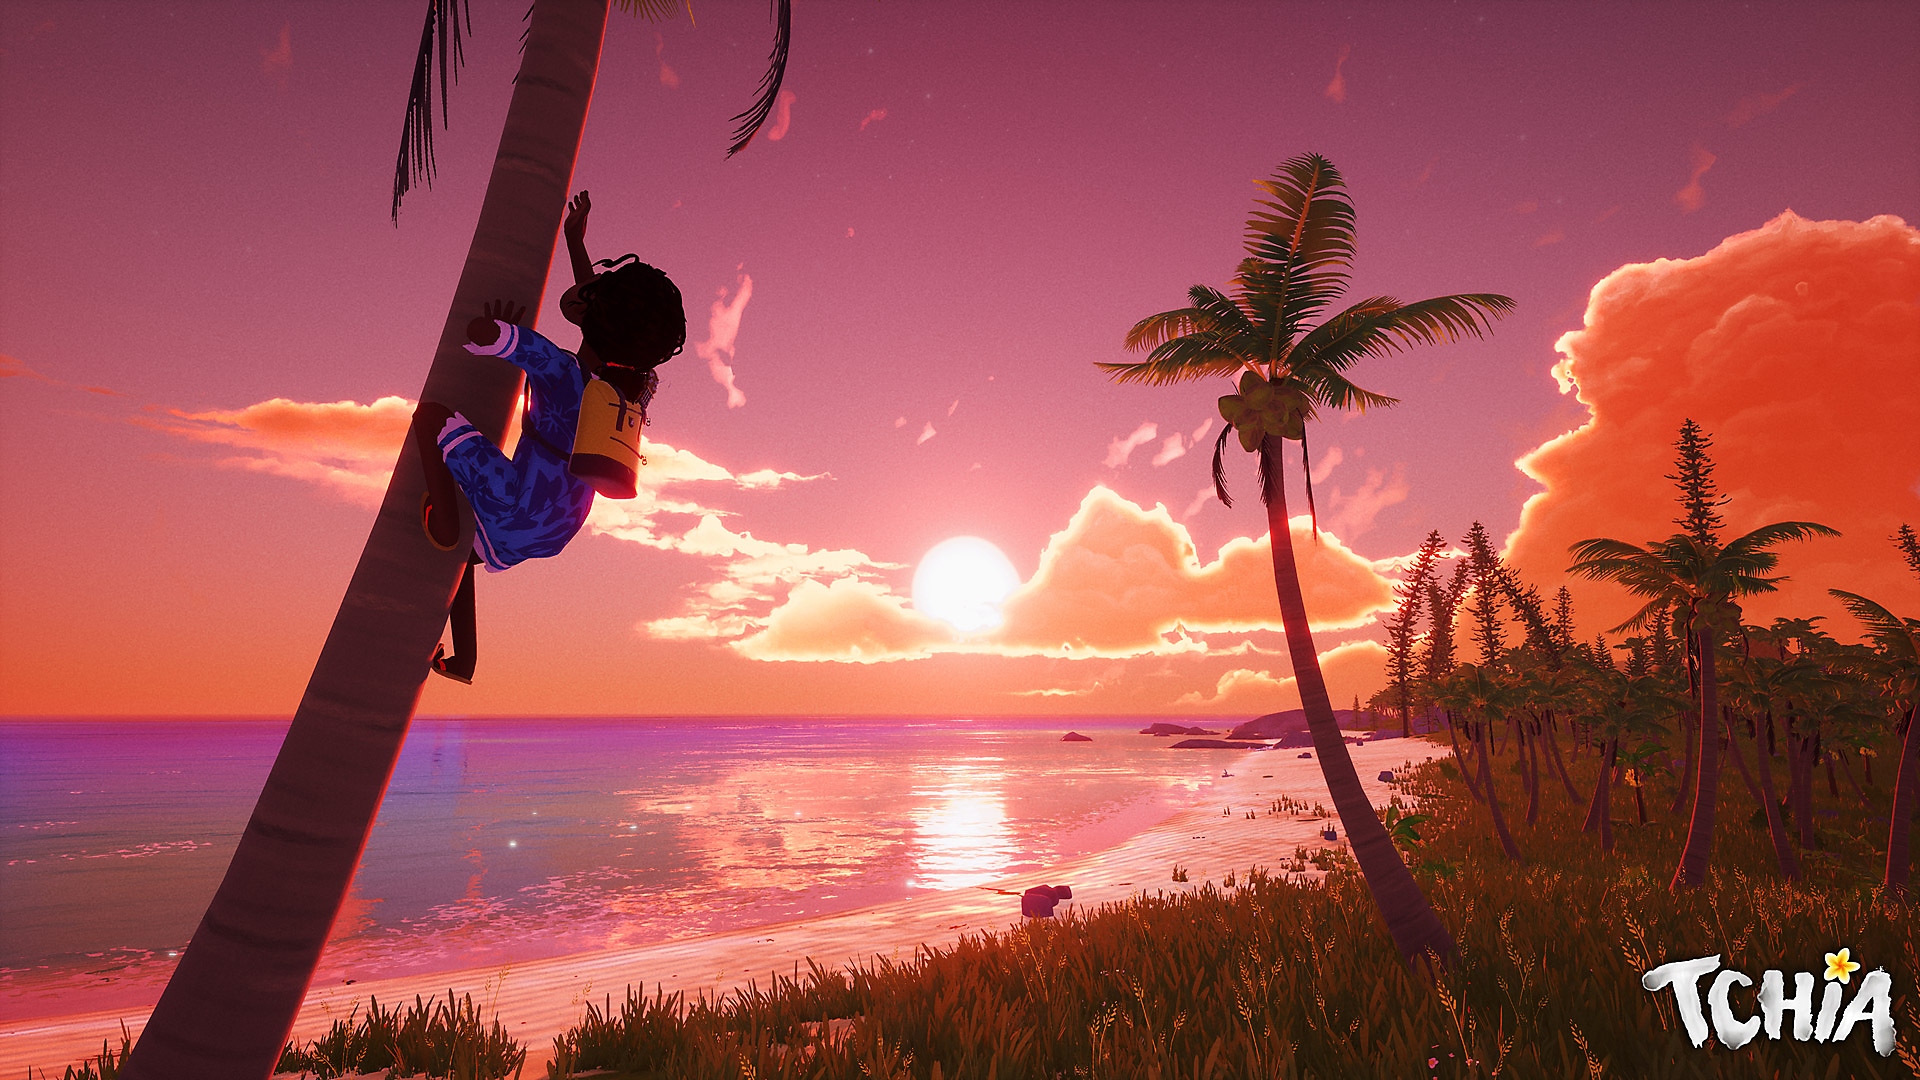 Tchia-skærmbillede med hovedpersonen, der klatrer op i et træ med en smuk solnedgang i det fjerne